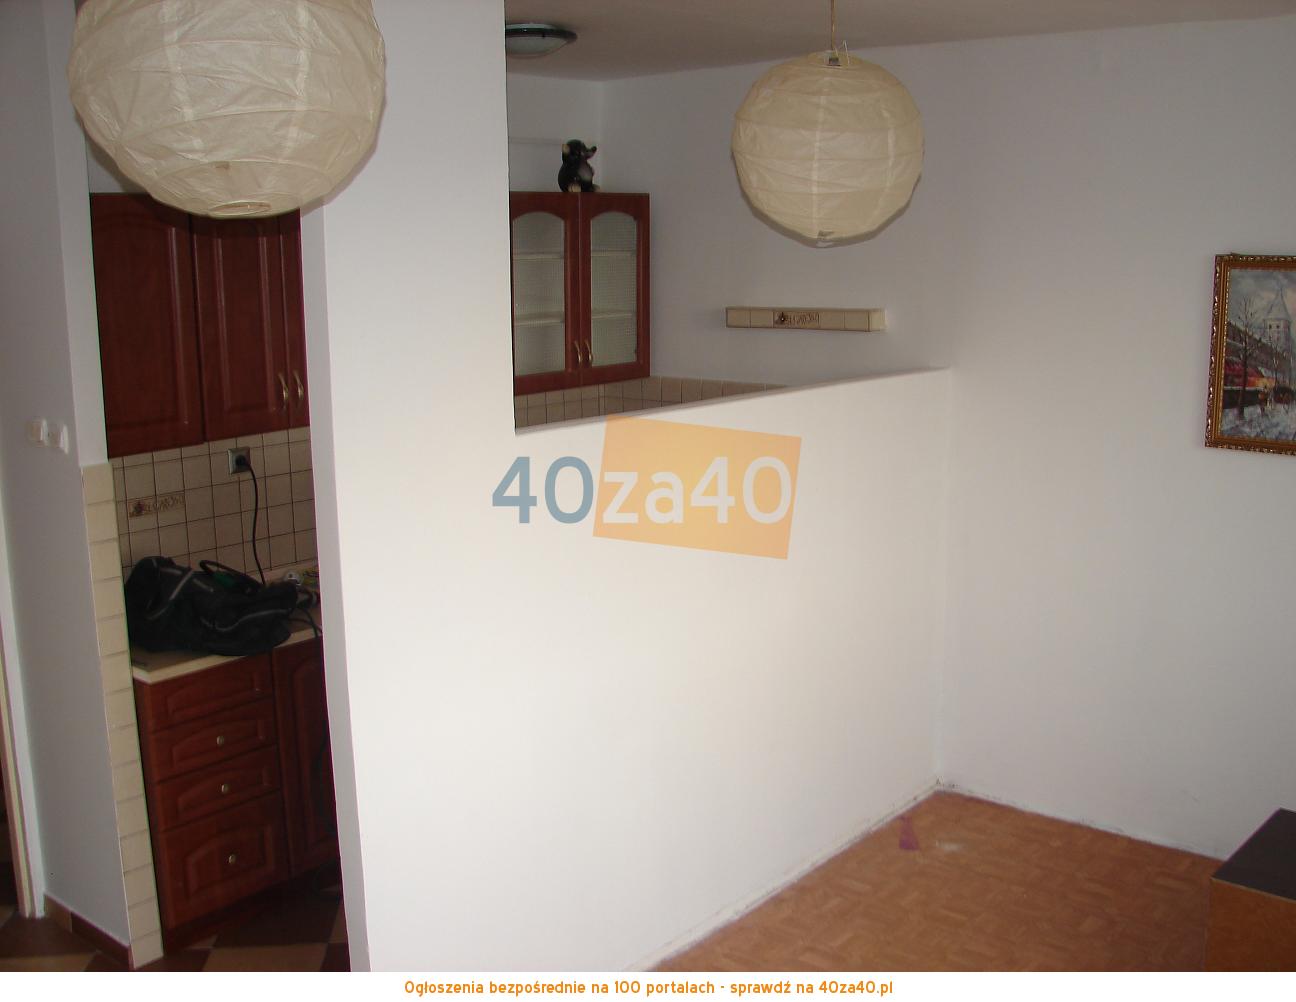 Mieszkanie do wynajęcia, pokoje: 1, cena: 700,00 PLN, Kraków, kontakt: 517200544